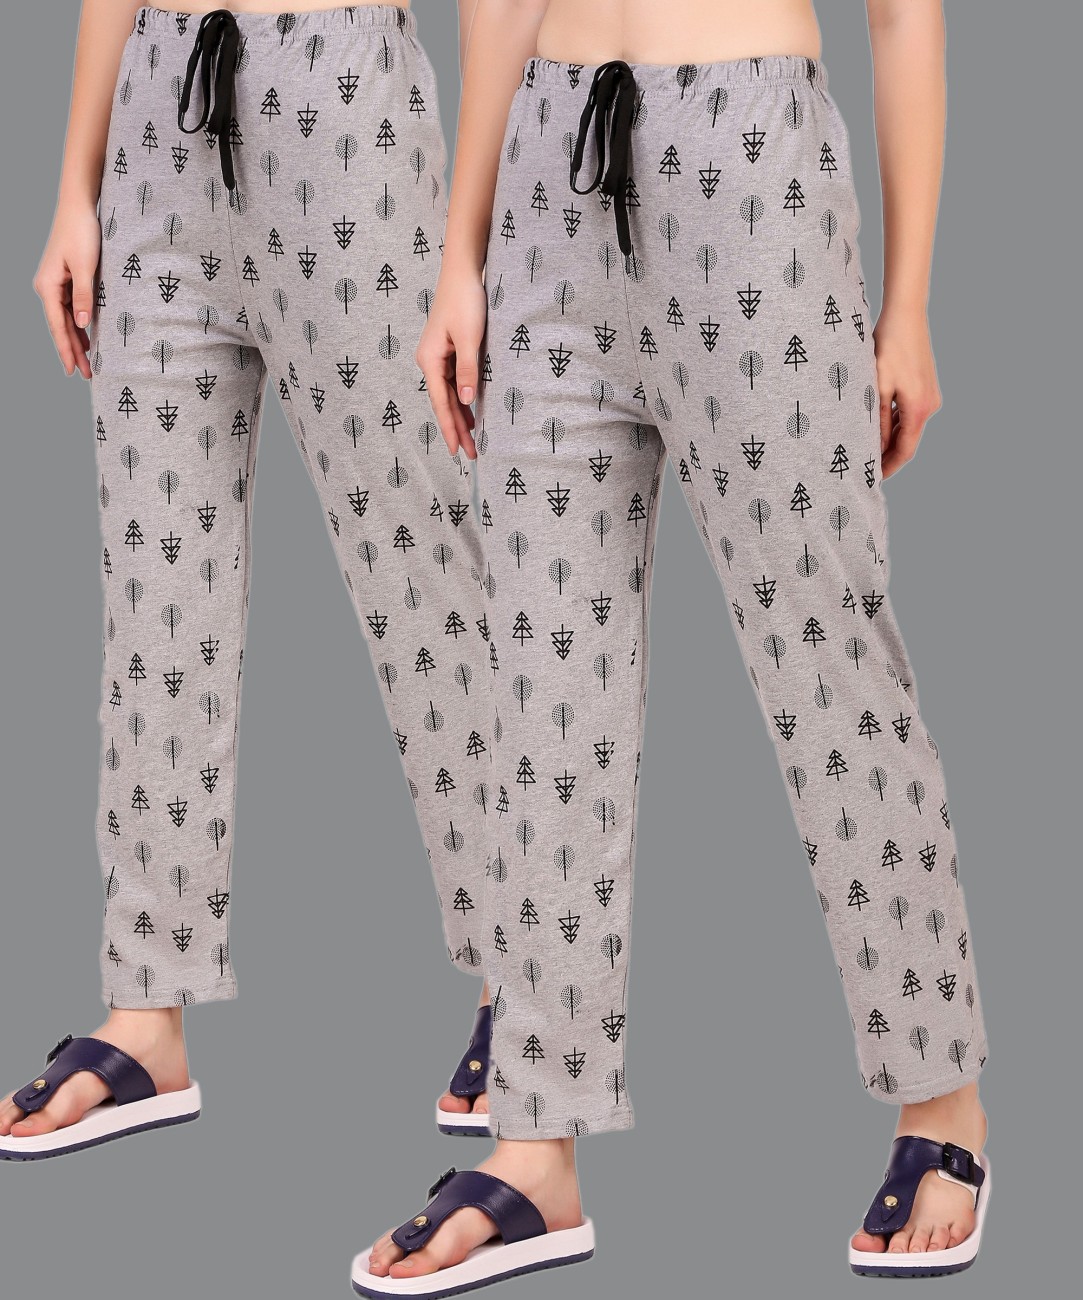 TRYCLO Women Pyjama